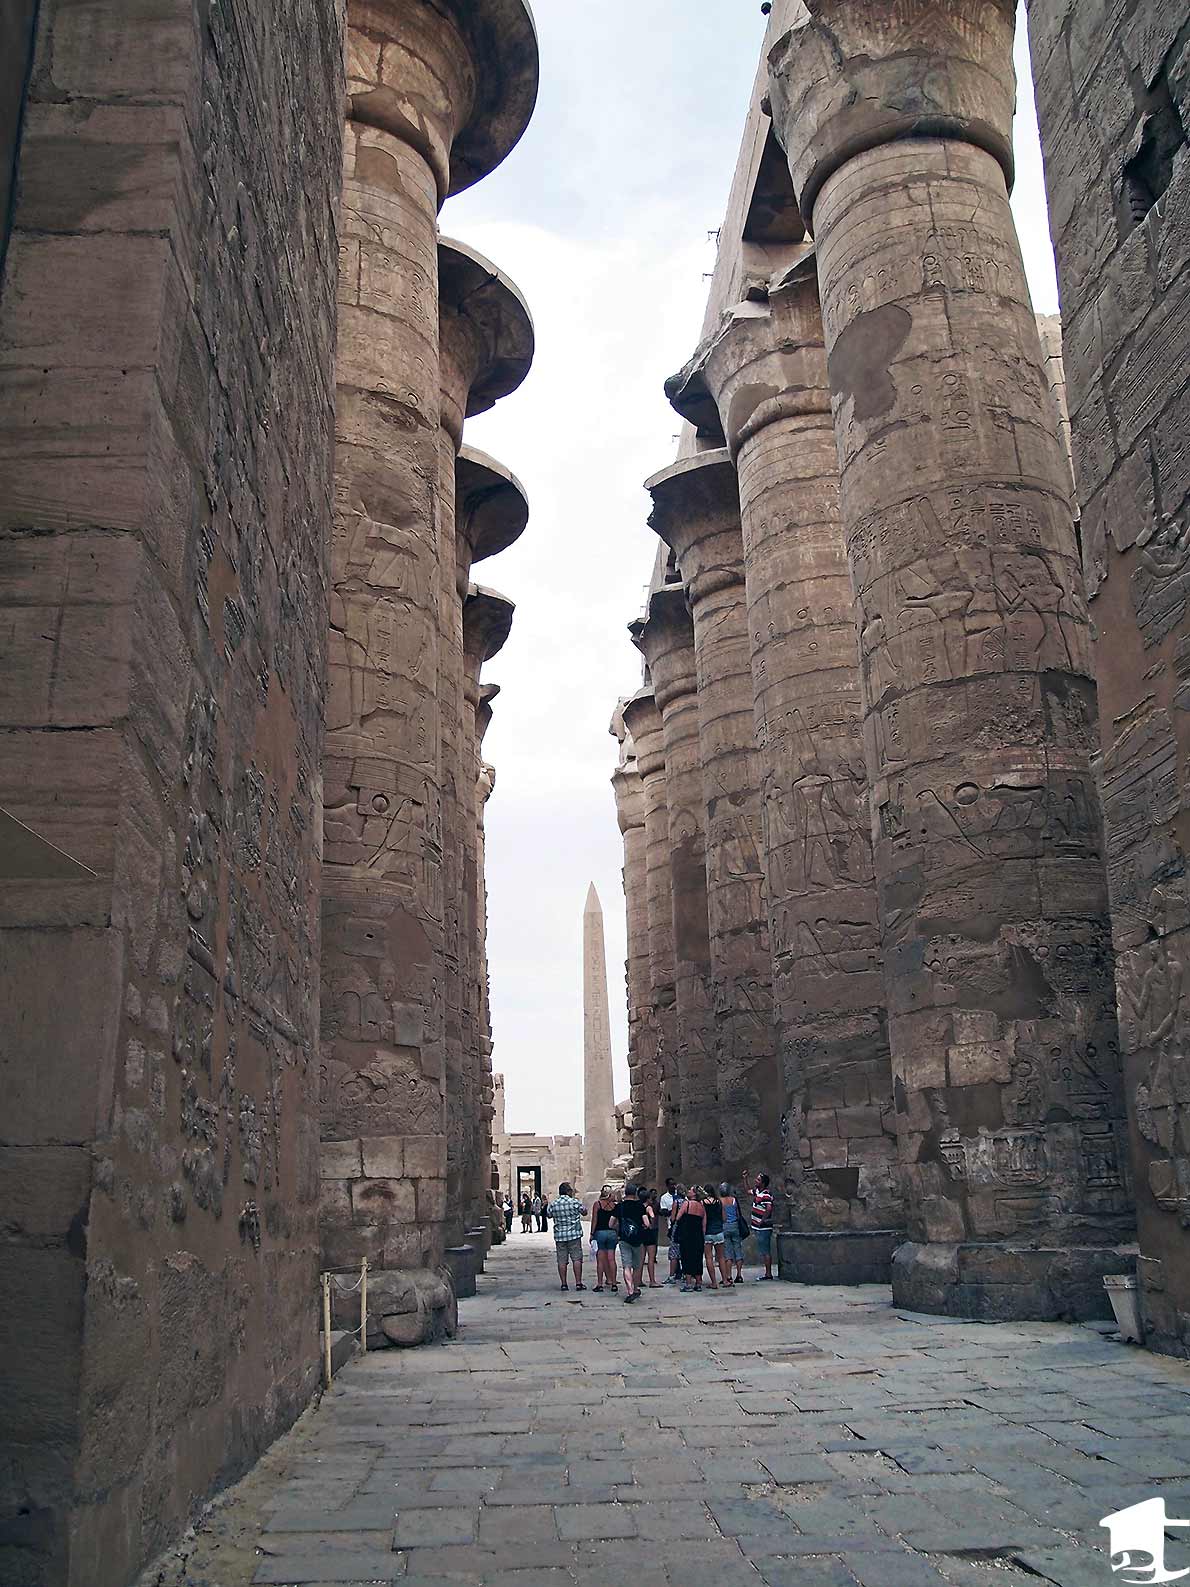 Enormous pillars at Karnak